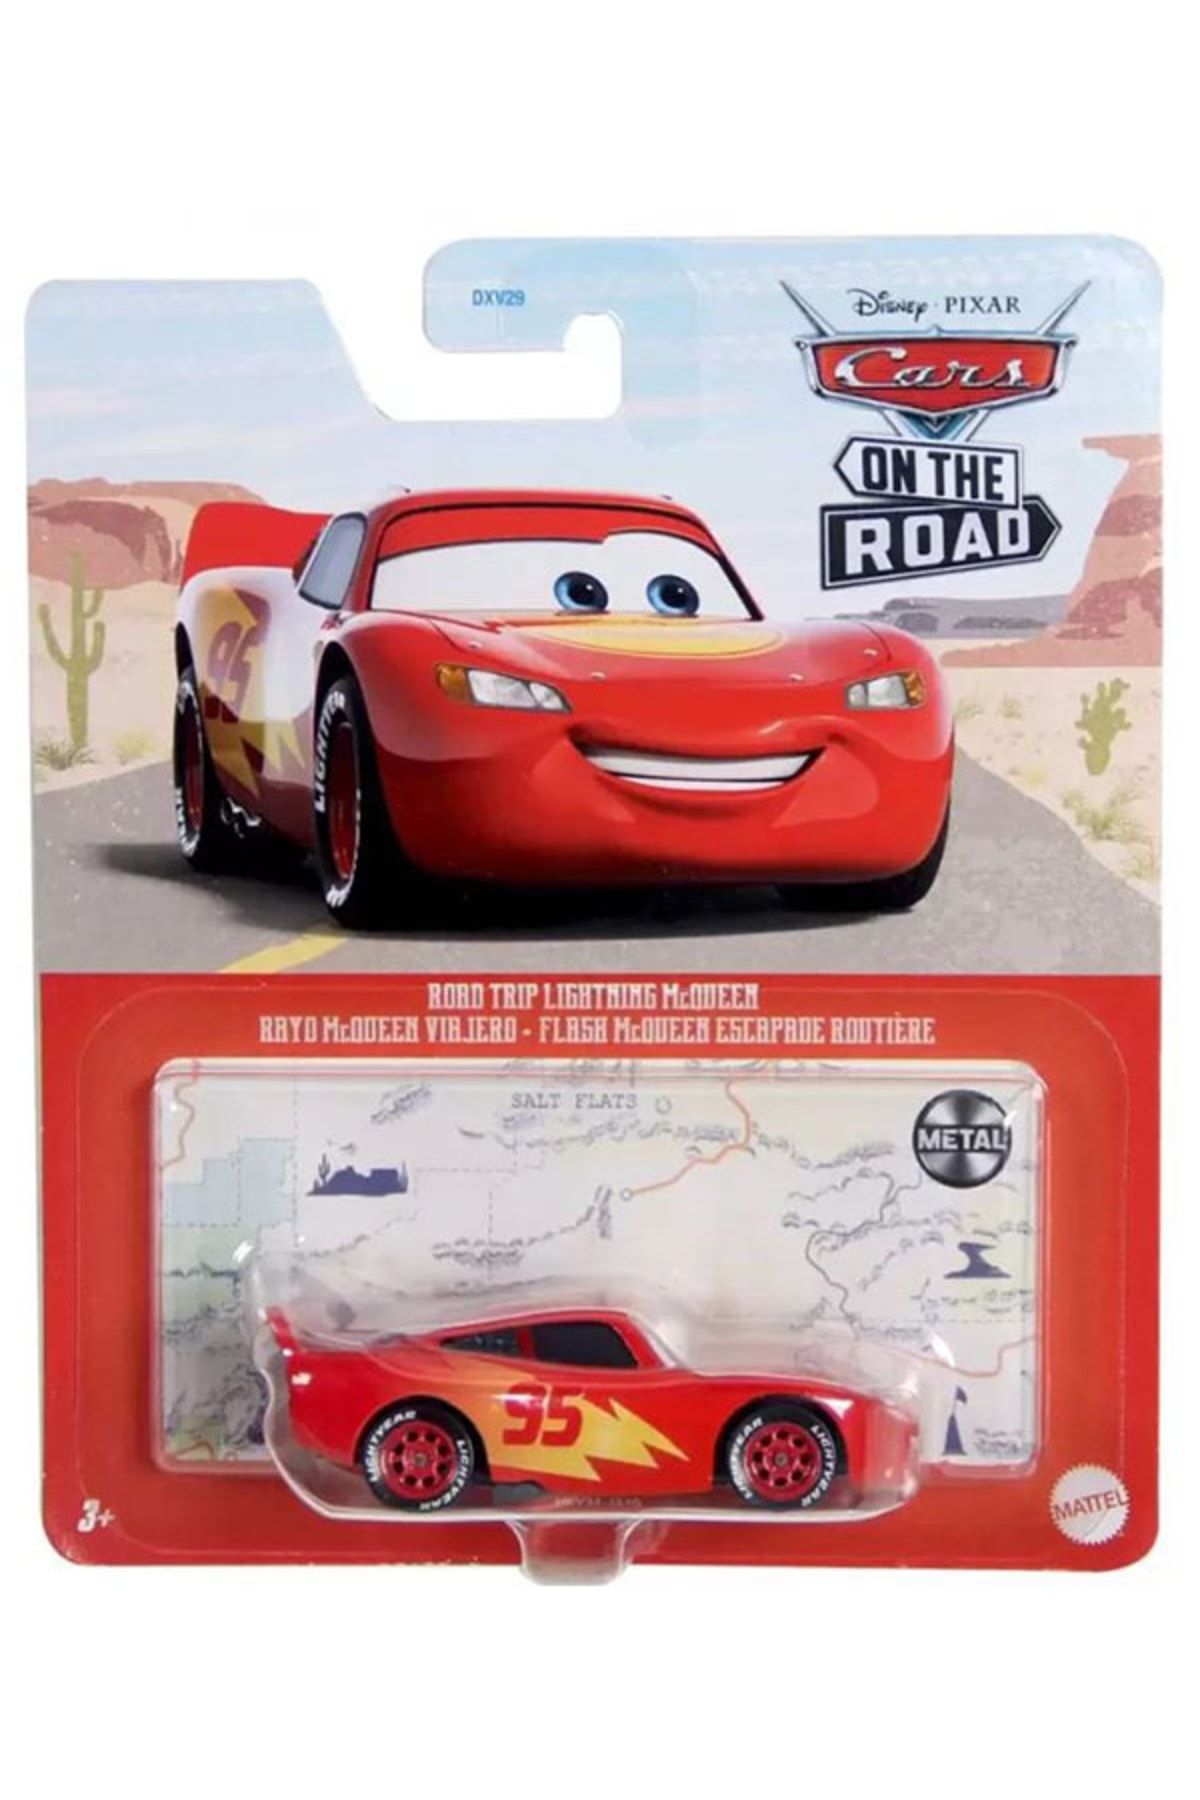 Cars Disney Pixar 3 Road Trip Lightning Mcqueen Rayo Mcqueen Viajero (1/55)